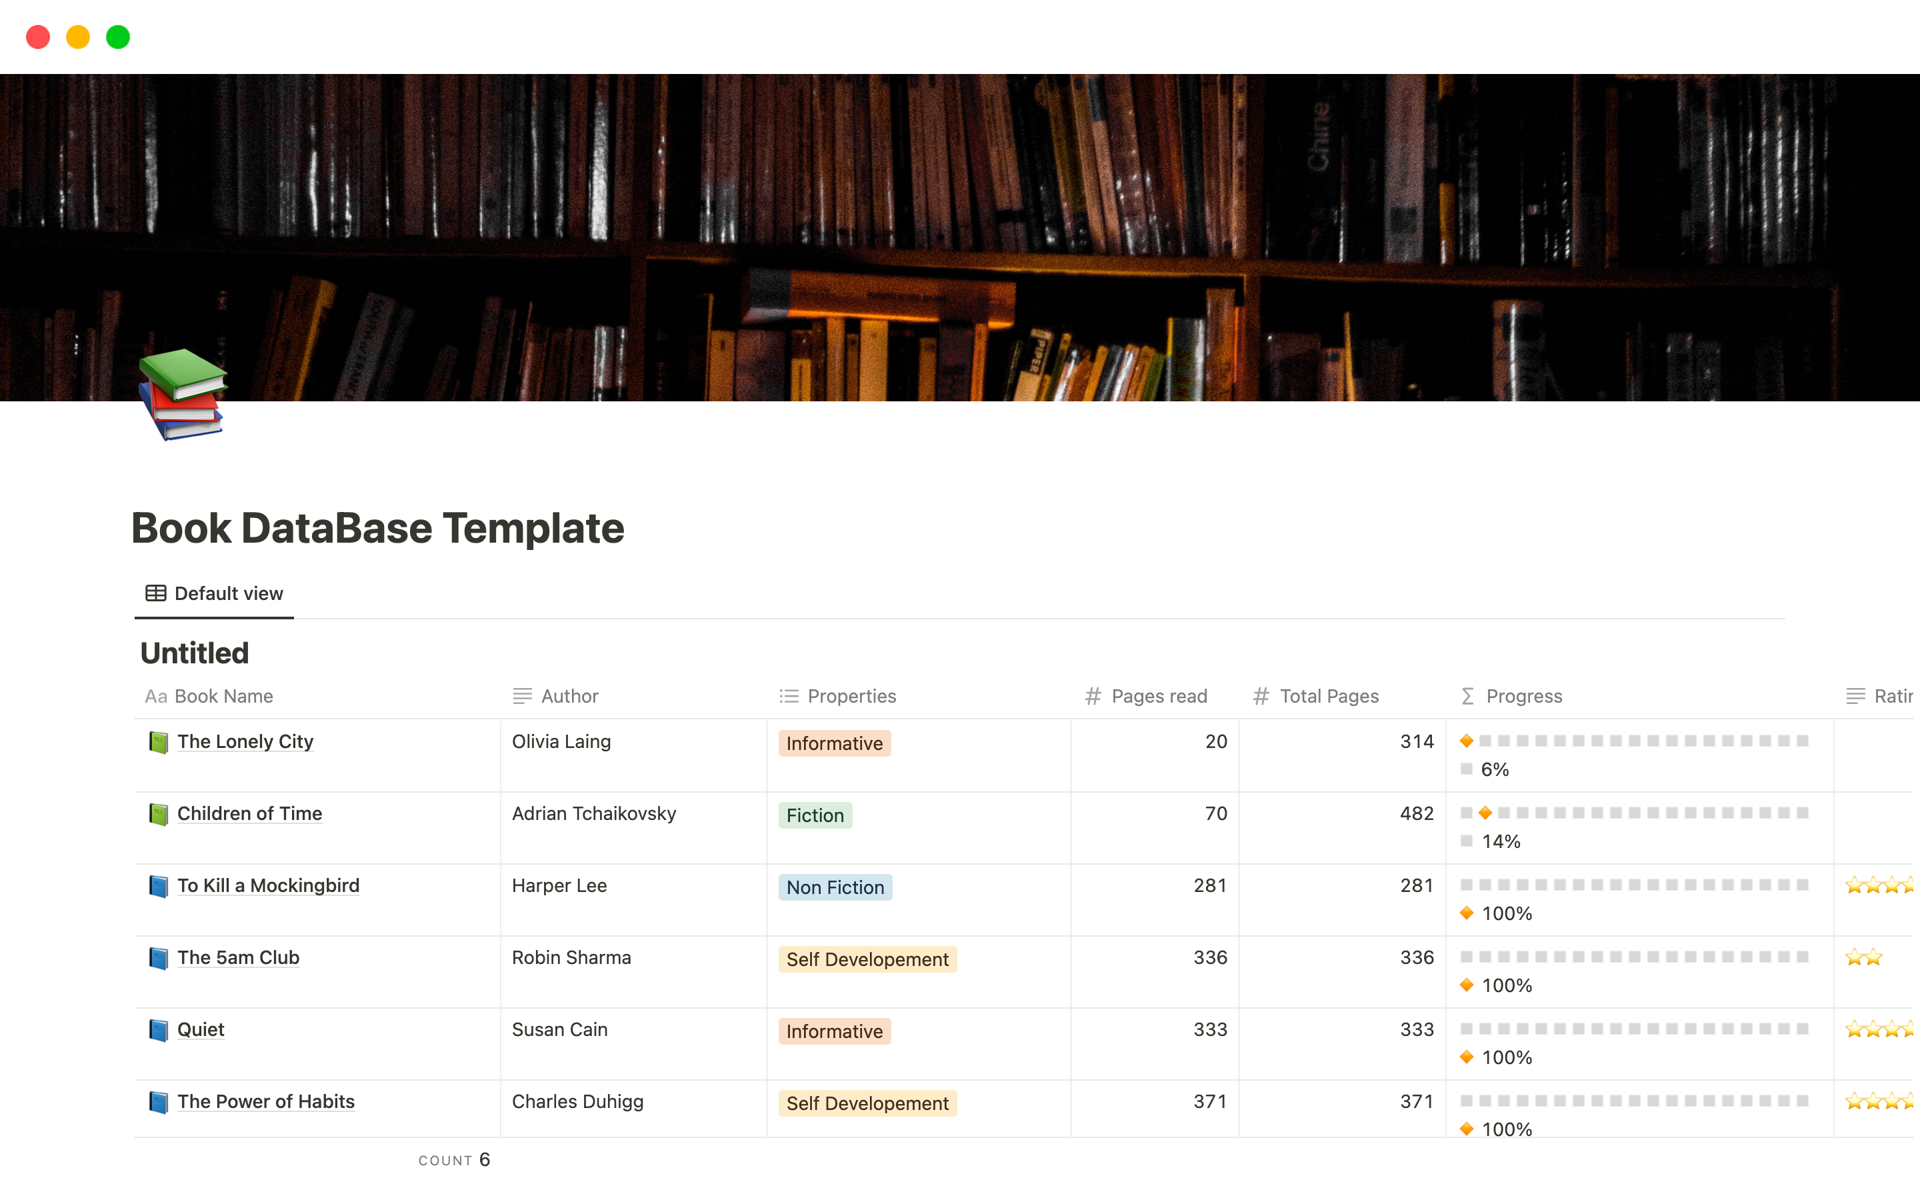 Vista previa de una plantilla para Book DataBase Template